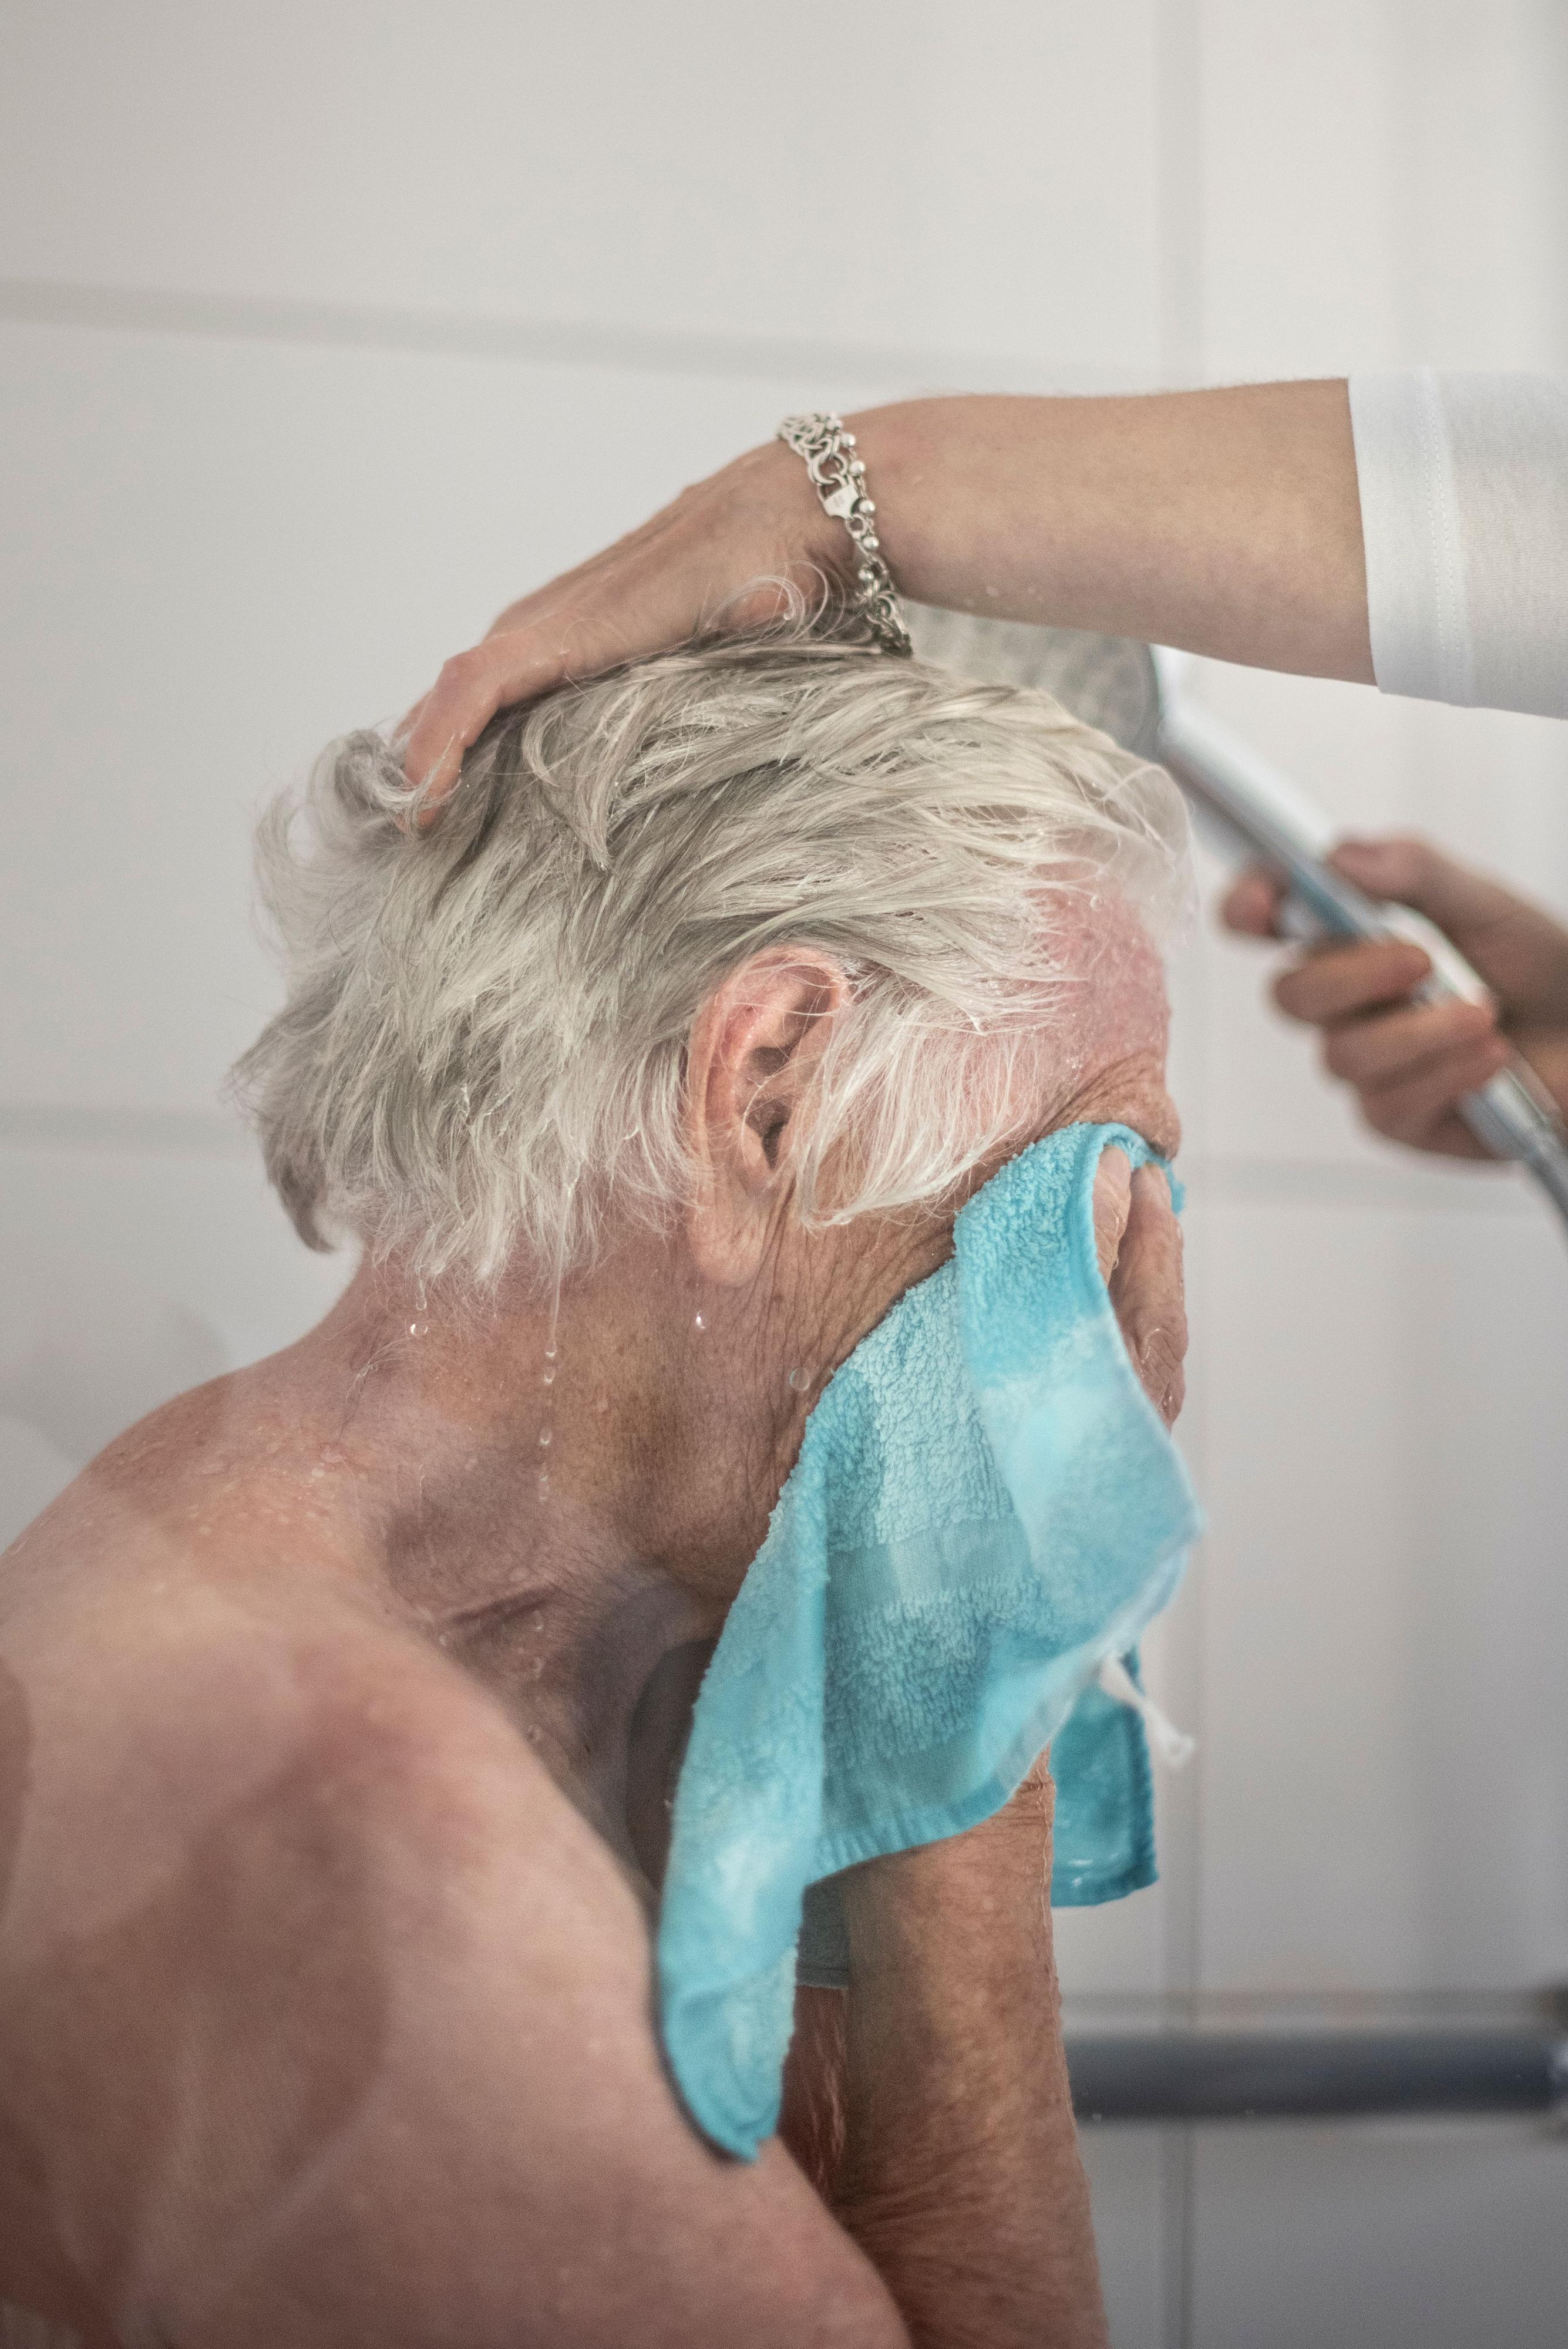 Ein älterer Mann hält sich ein Handtuch vor das Gesicht, während seine Haare gewaschen werden.